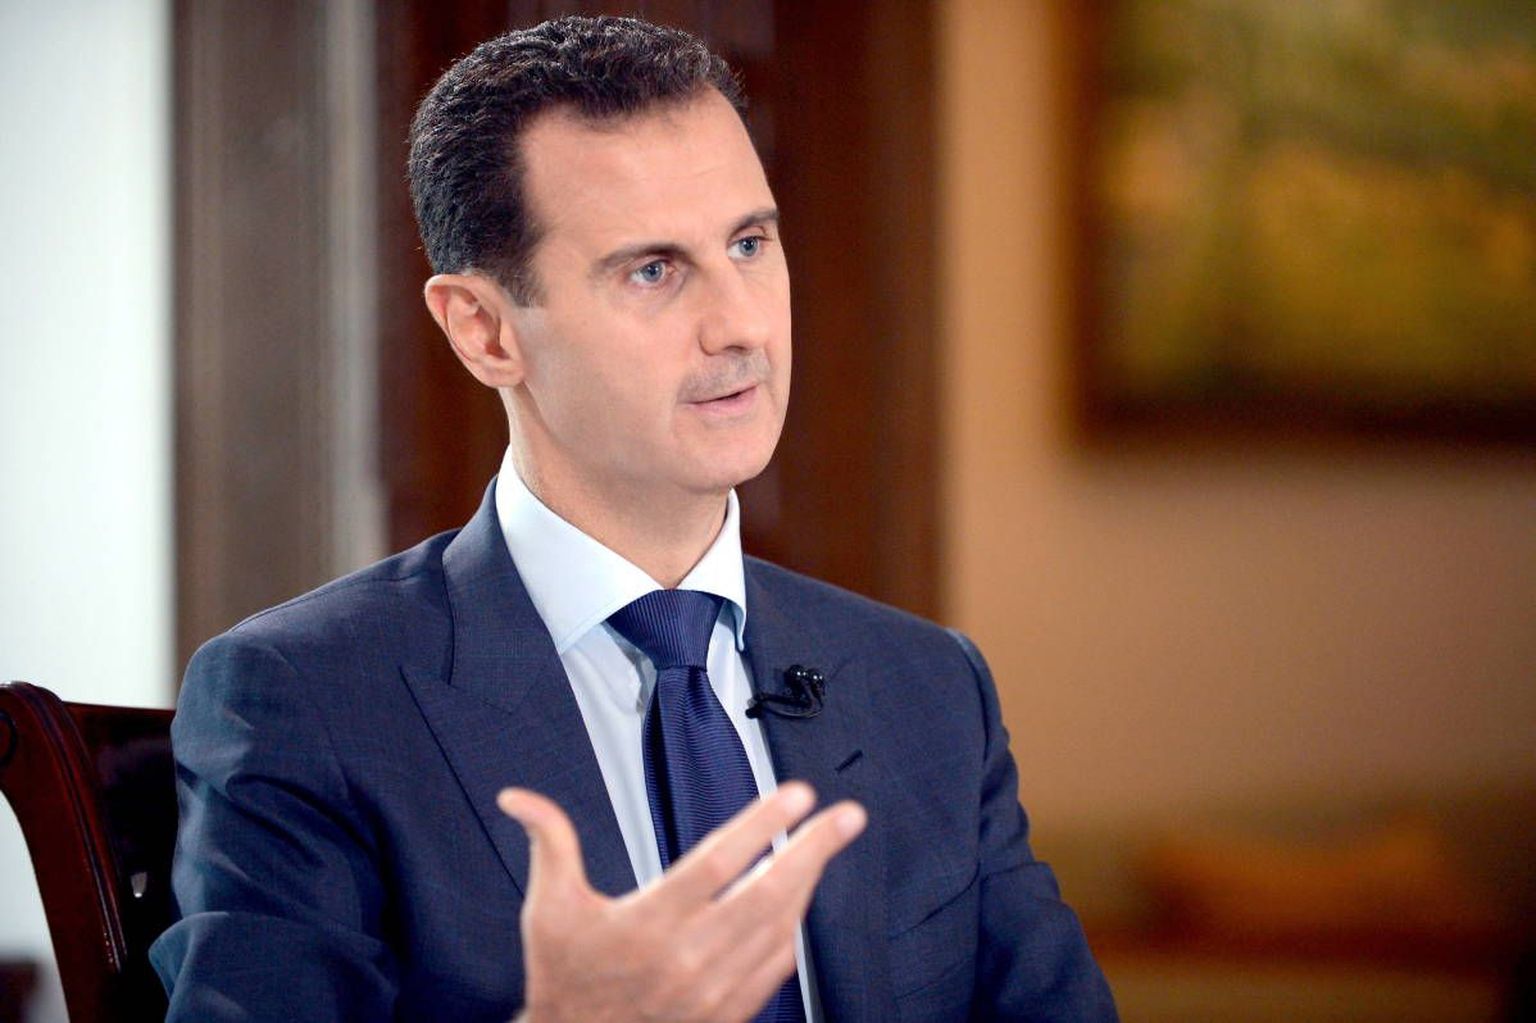 Süüria president Bashar al-Assad andis venelaste ajalehele haruldase intervjuu.